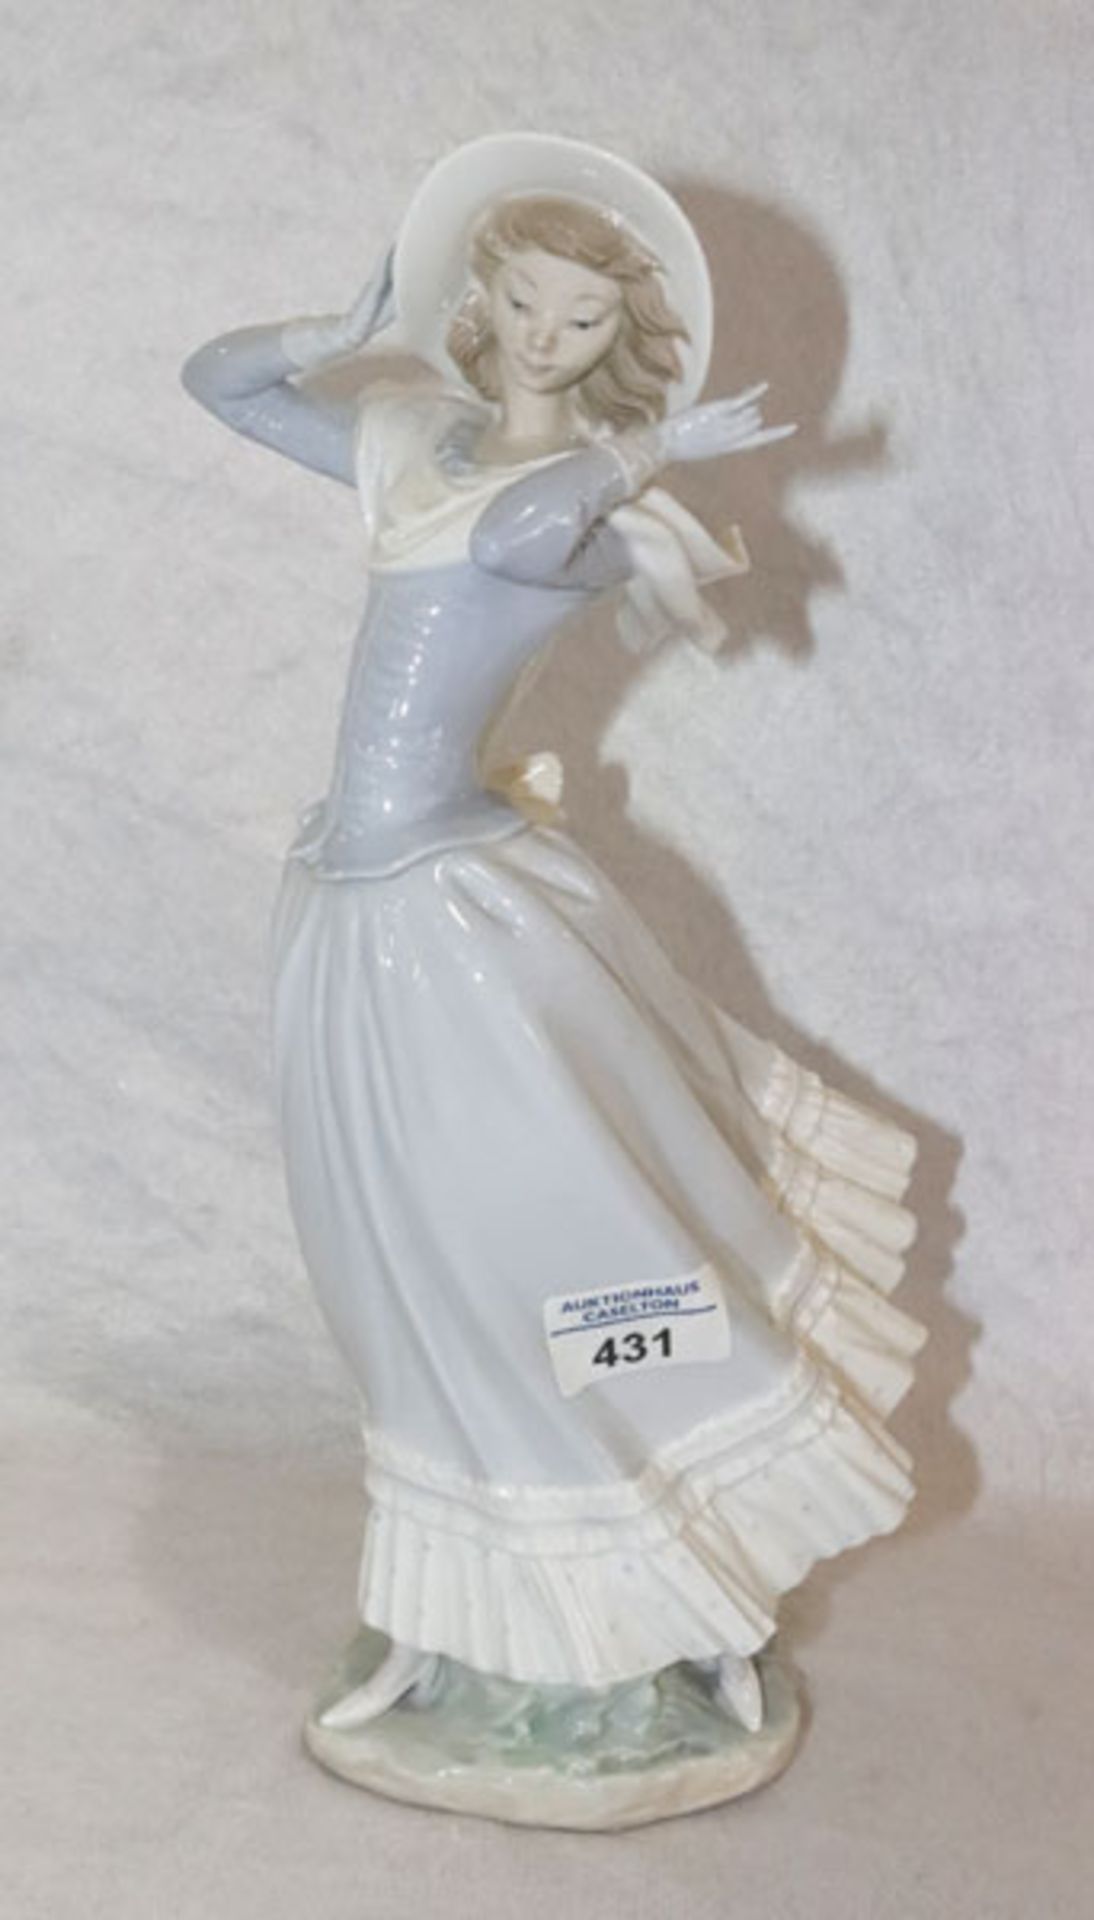 Lladro Figuenskulptur 'Mädchen mit Hut', H 35 cm, B 15 cm, T 17 cm, gut erhalten